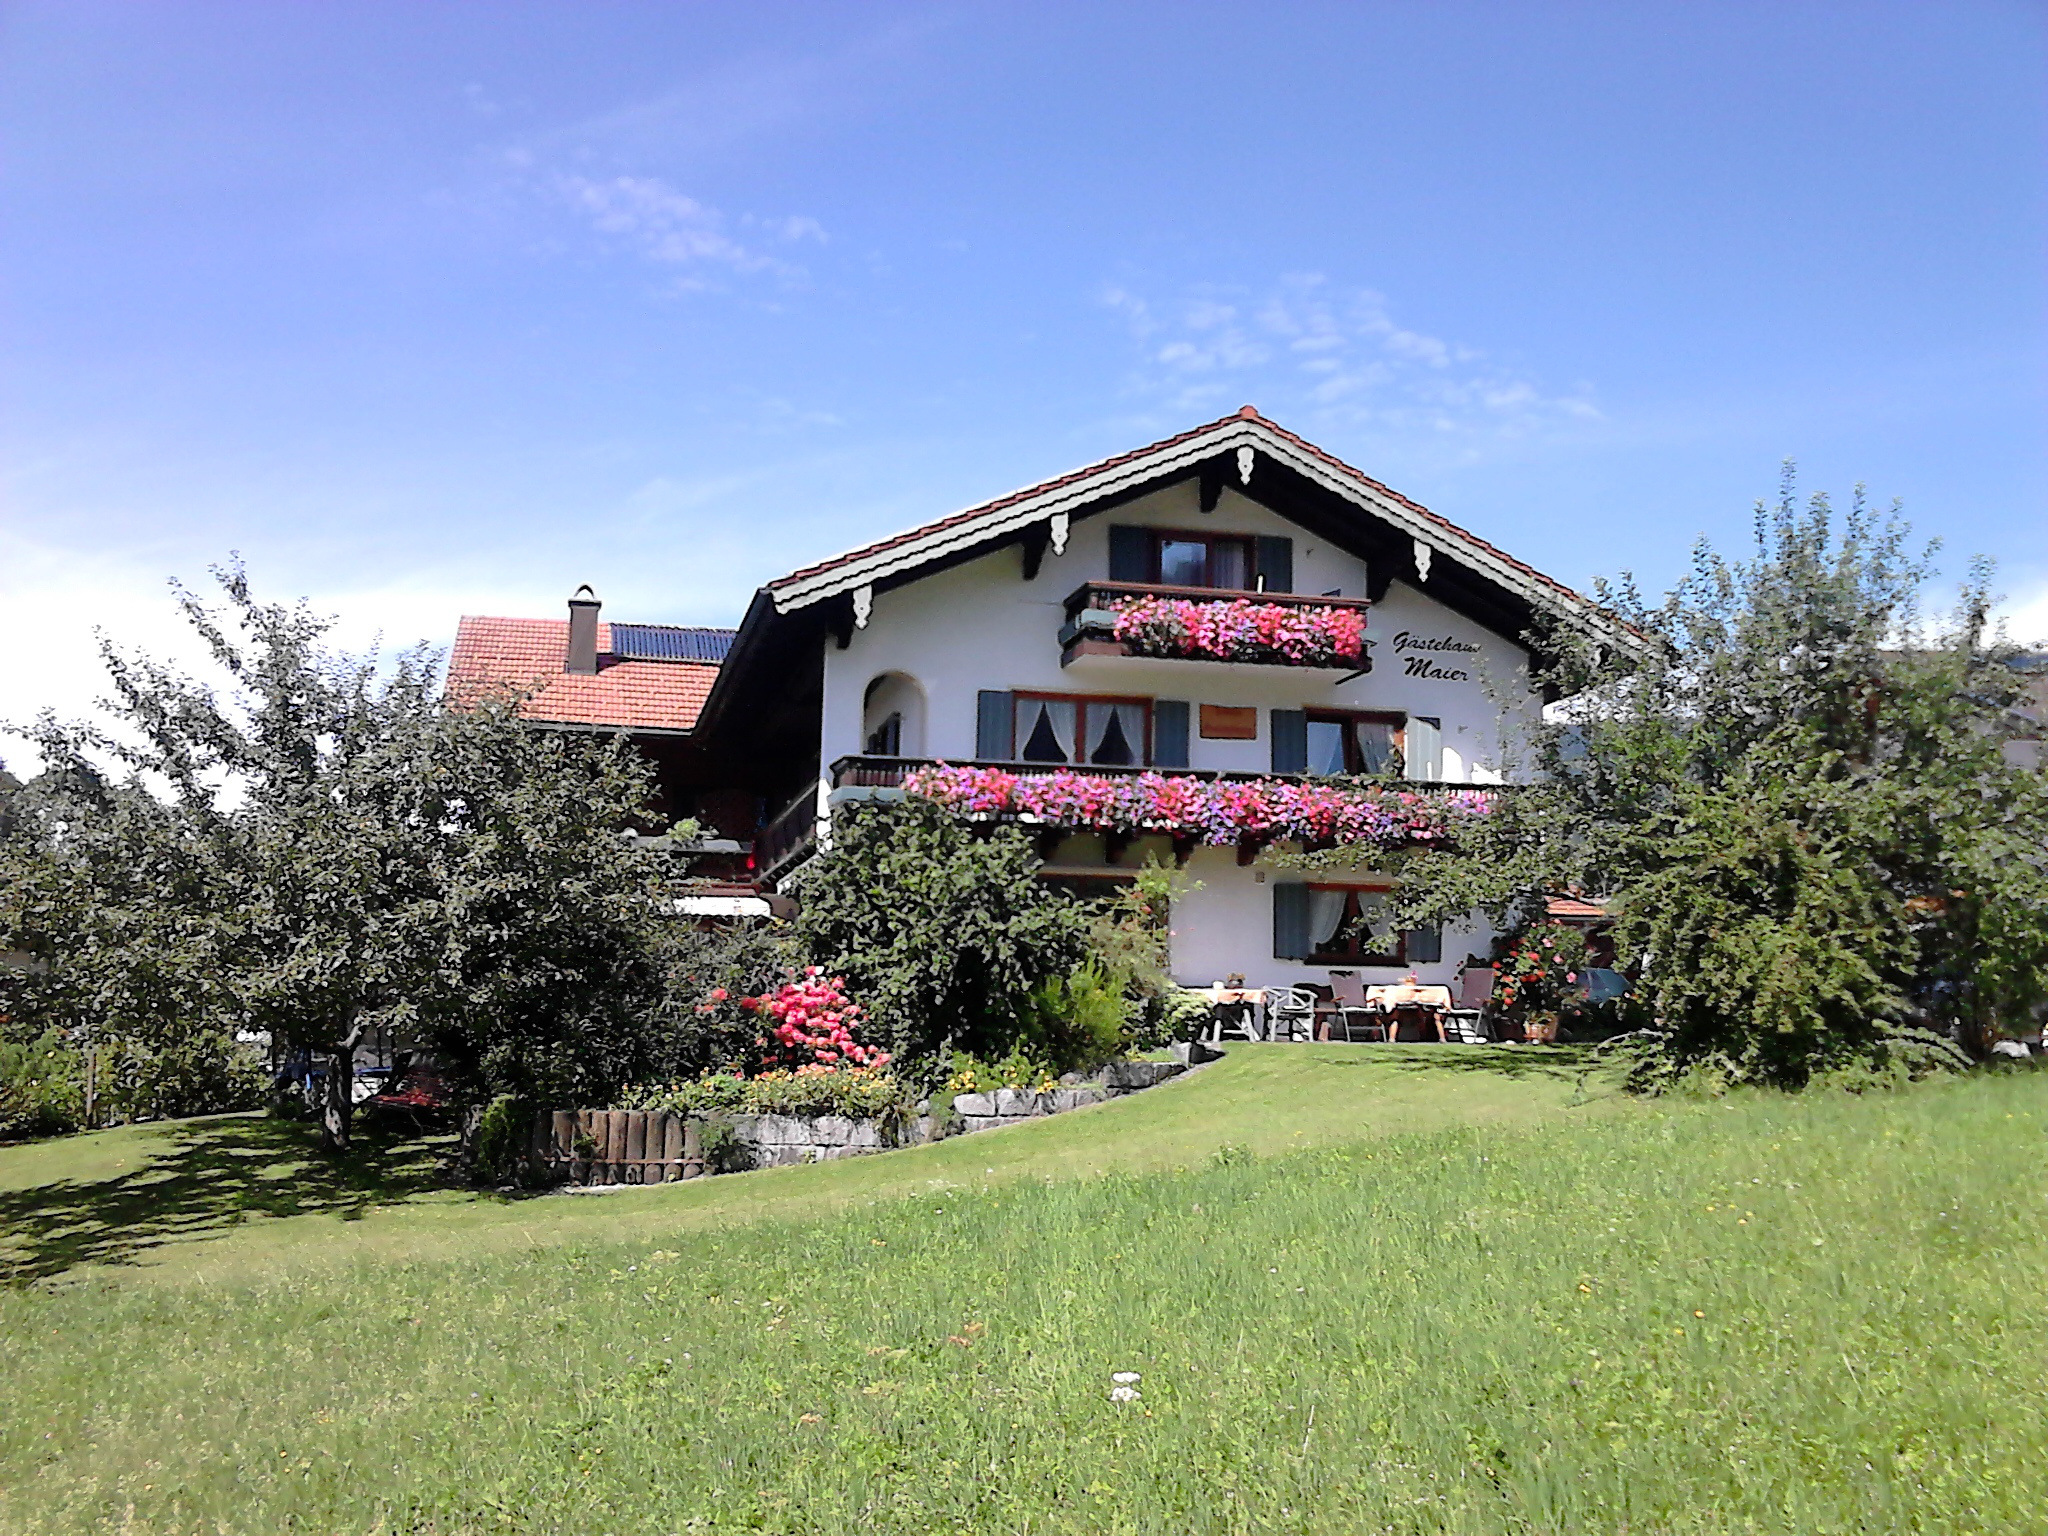 Haus Gehmacher-Maier - Chiemgau Karte (DE Inzell). Ferienwohnung in den Alpen